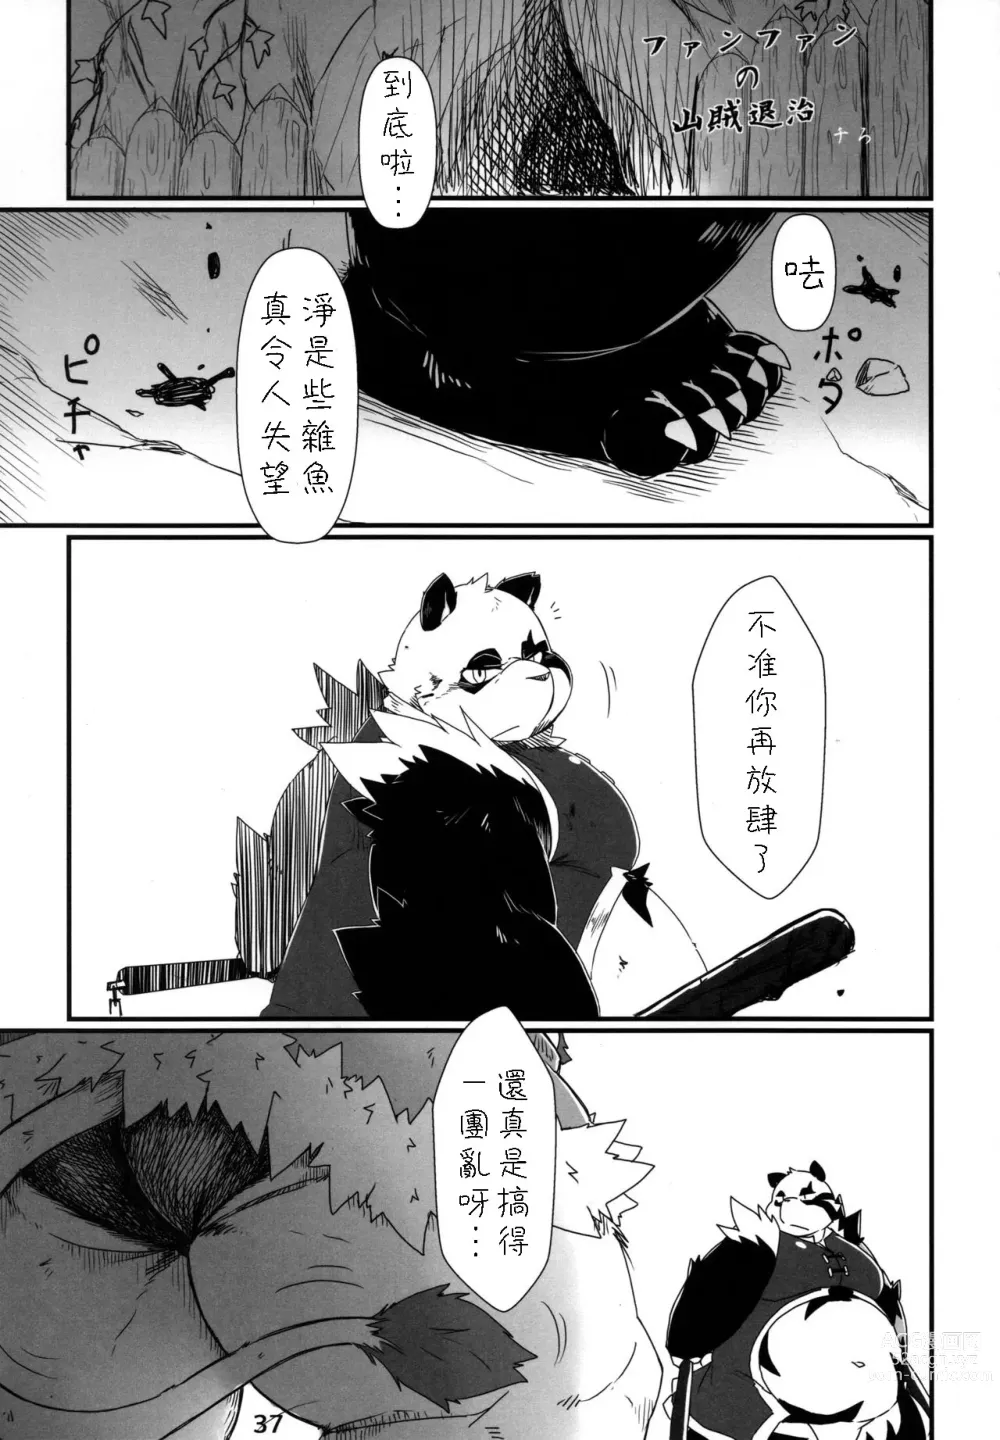 Page 36 of doujinshi Moero Fanfan